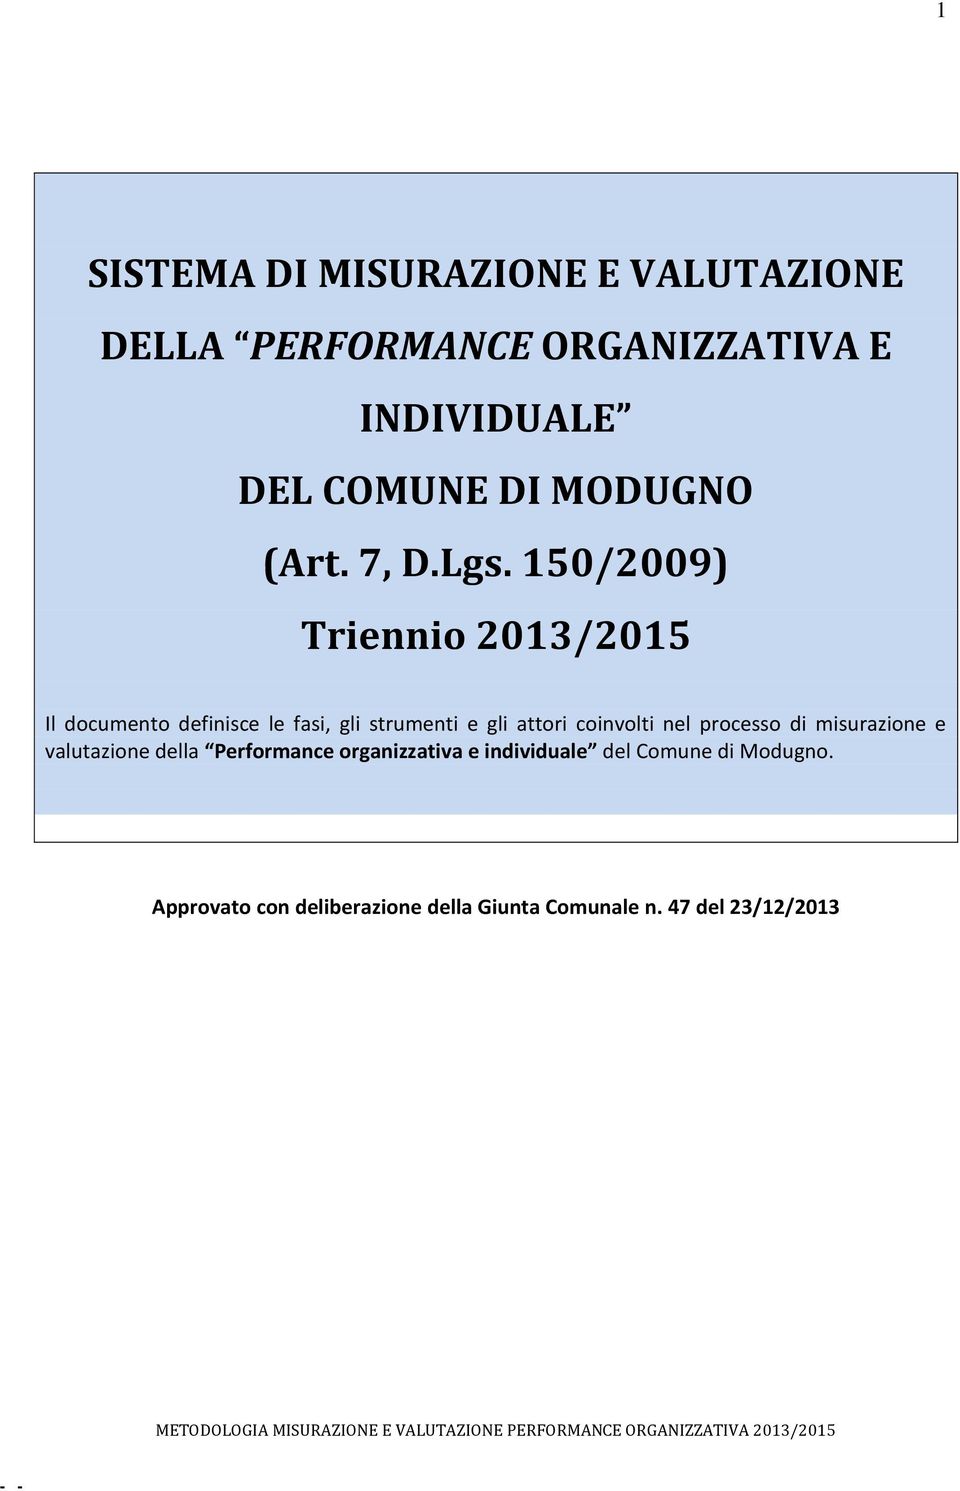 misurazione e valutazione della Performance organizzativa e individuale del Comune di Modugno.